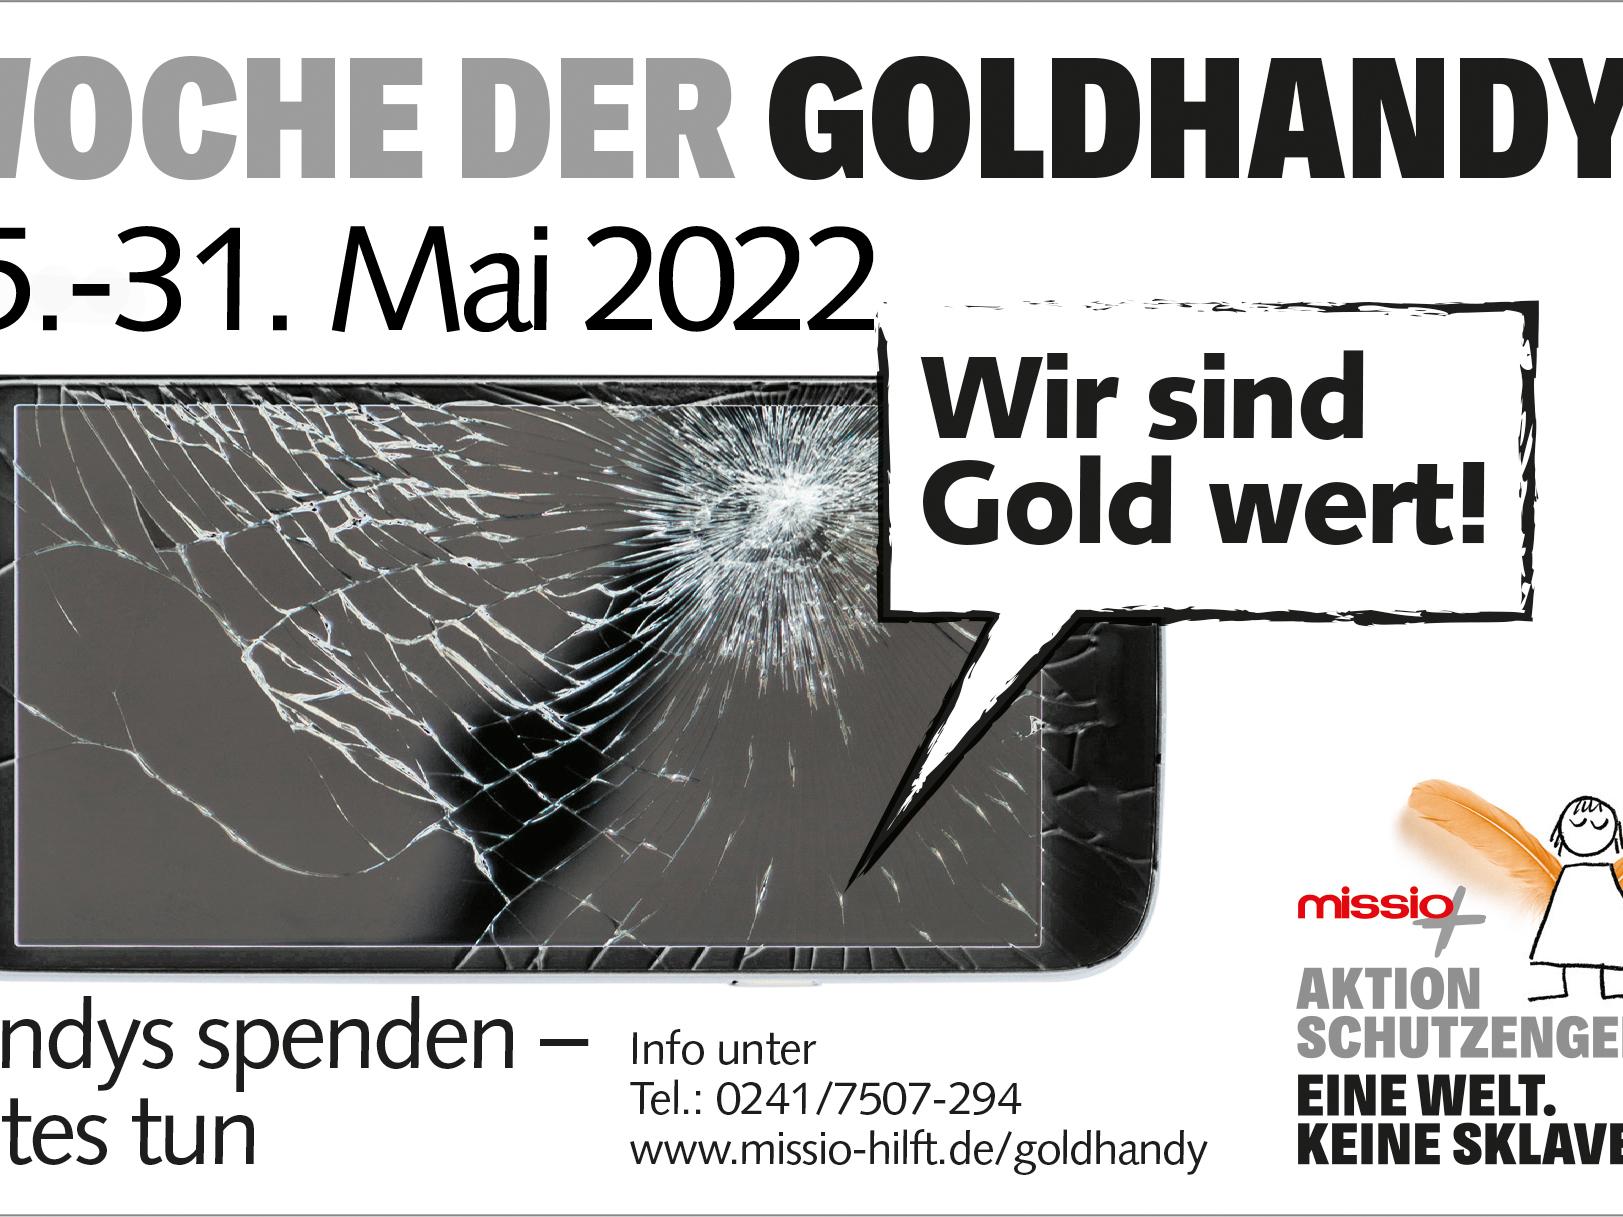 missio-hilft-aktion-schutzengel-woche-der-goldhandys-2022